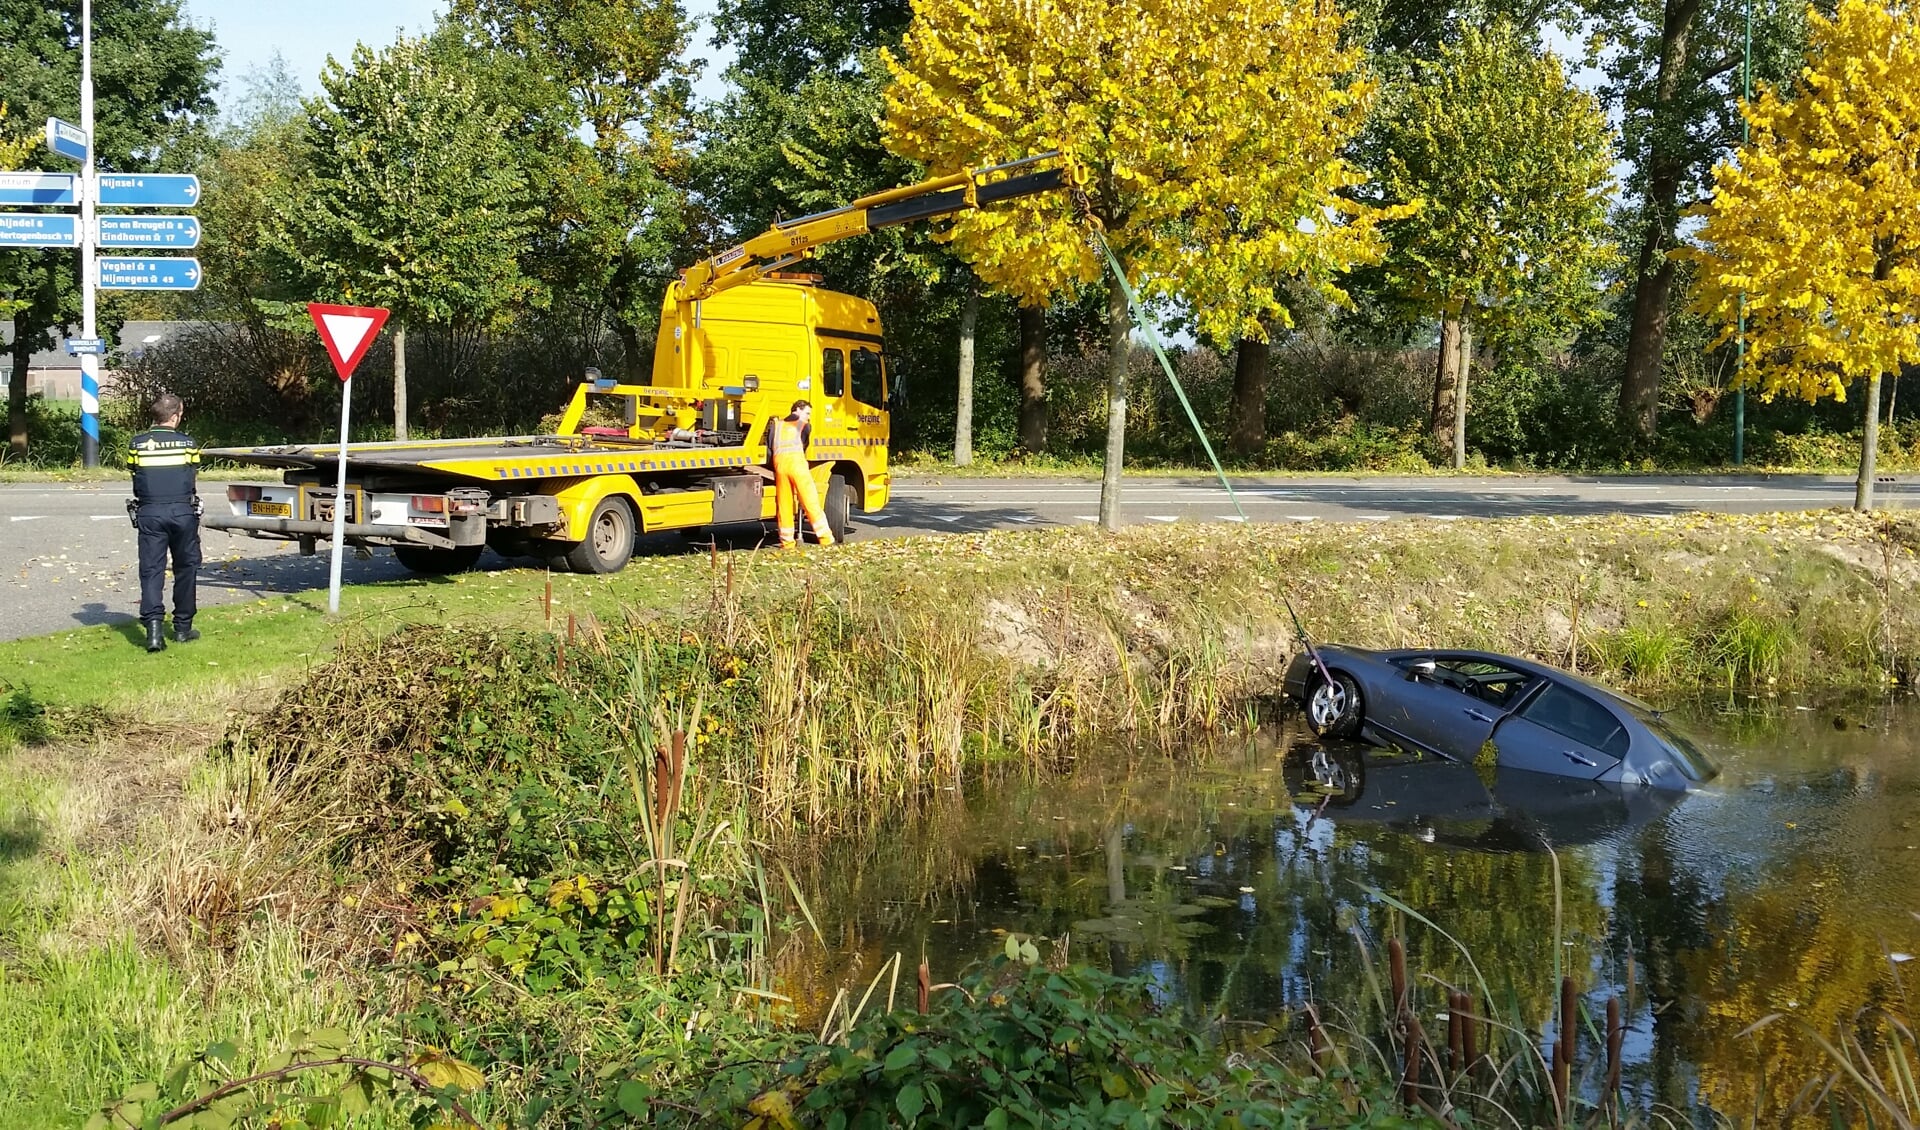 Foto: Marc Evers, Hoe de auto in het water raakte is onbekend.